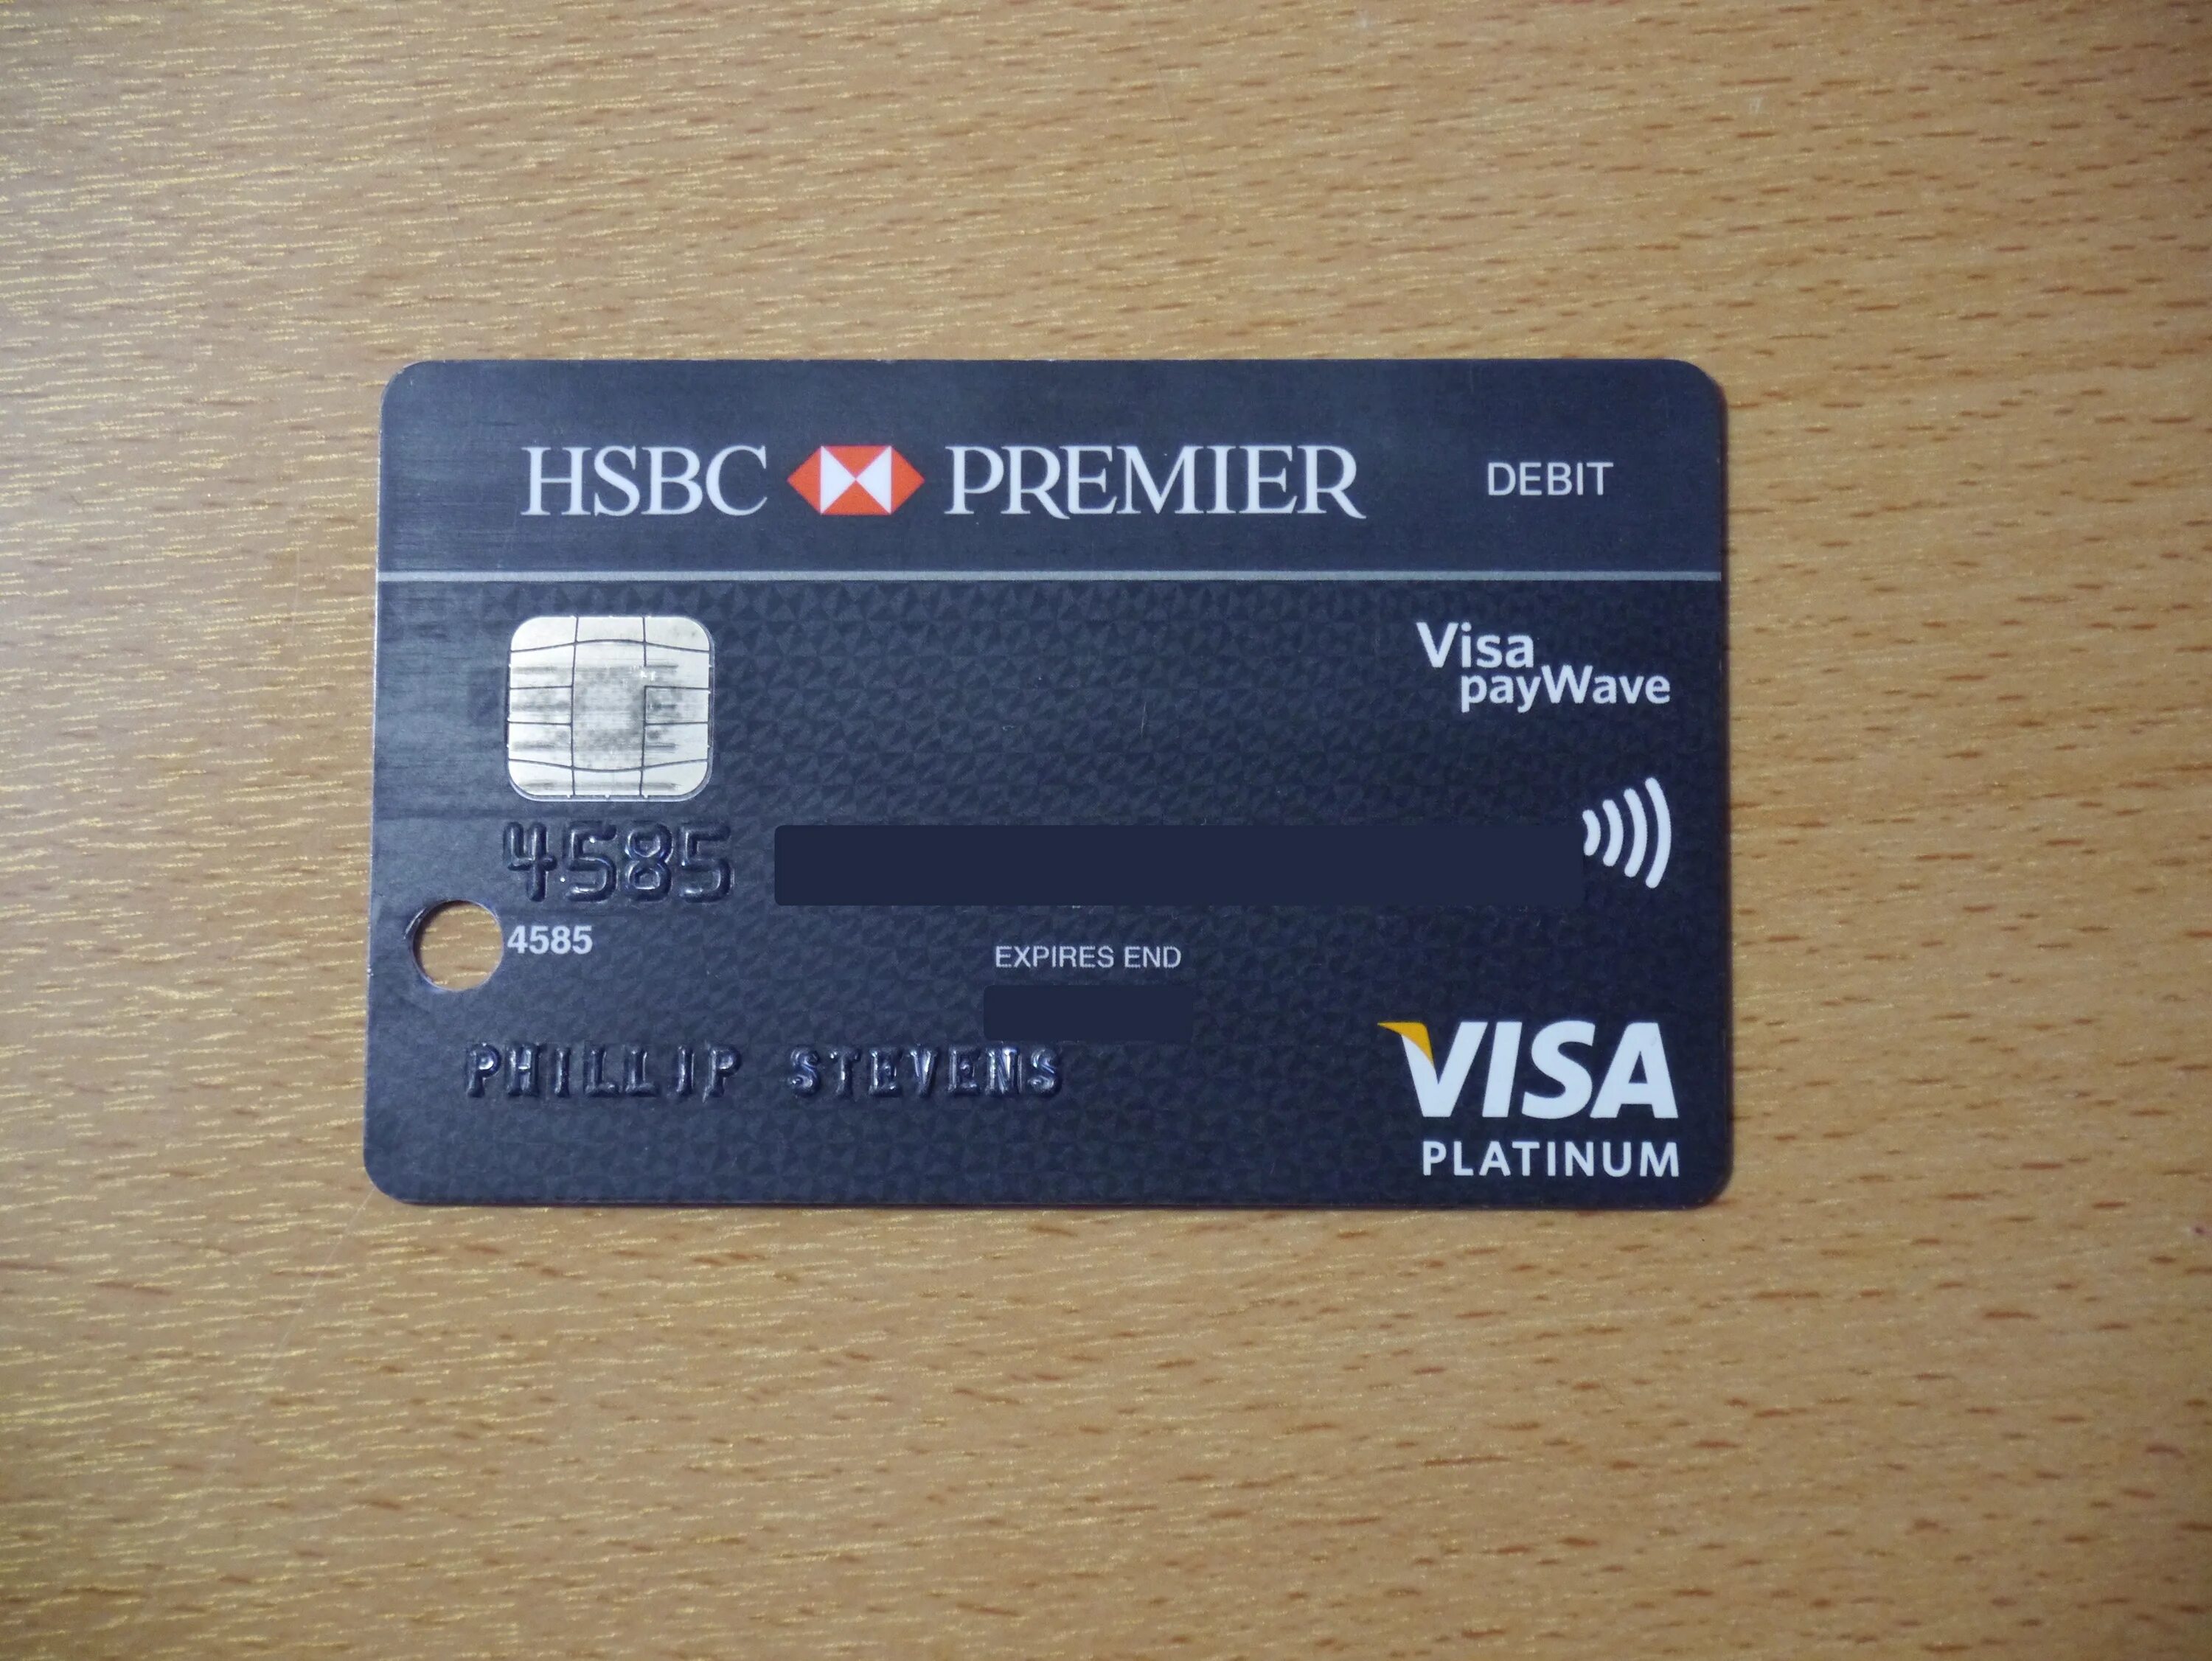 HSBC Card. Visa PAYWAVE Debit. HSBC Debit Card. М5 на карте. T me visa debit